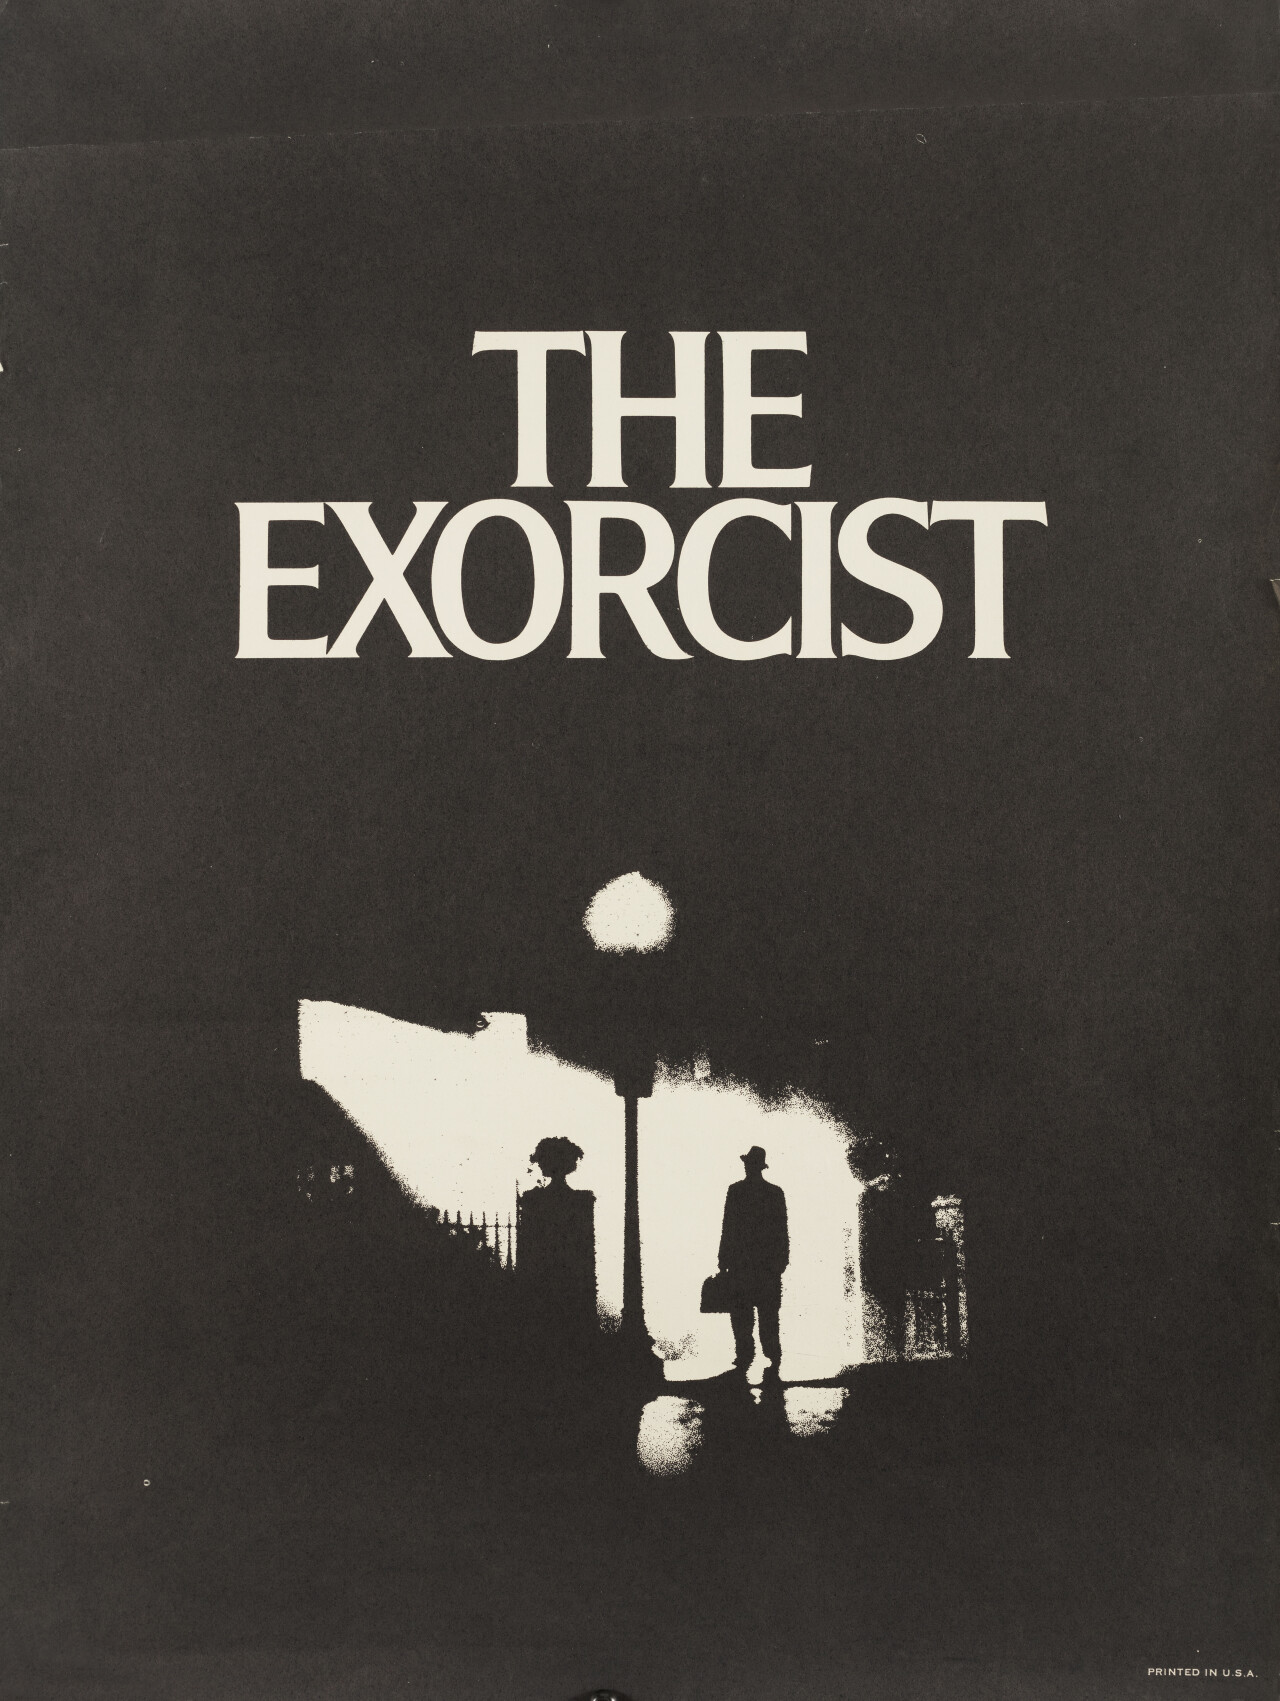 Изгоняющий дьявола (The Exorcist, 1973), режиссёр Уильям Фридкин, американский постер к фильму, автор Билл Голд, Дик Найп (ужасы, 1974 год)